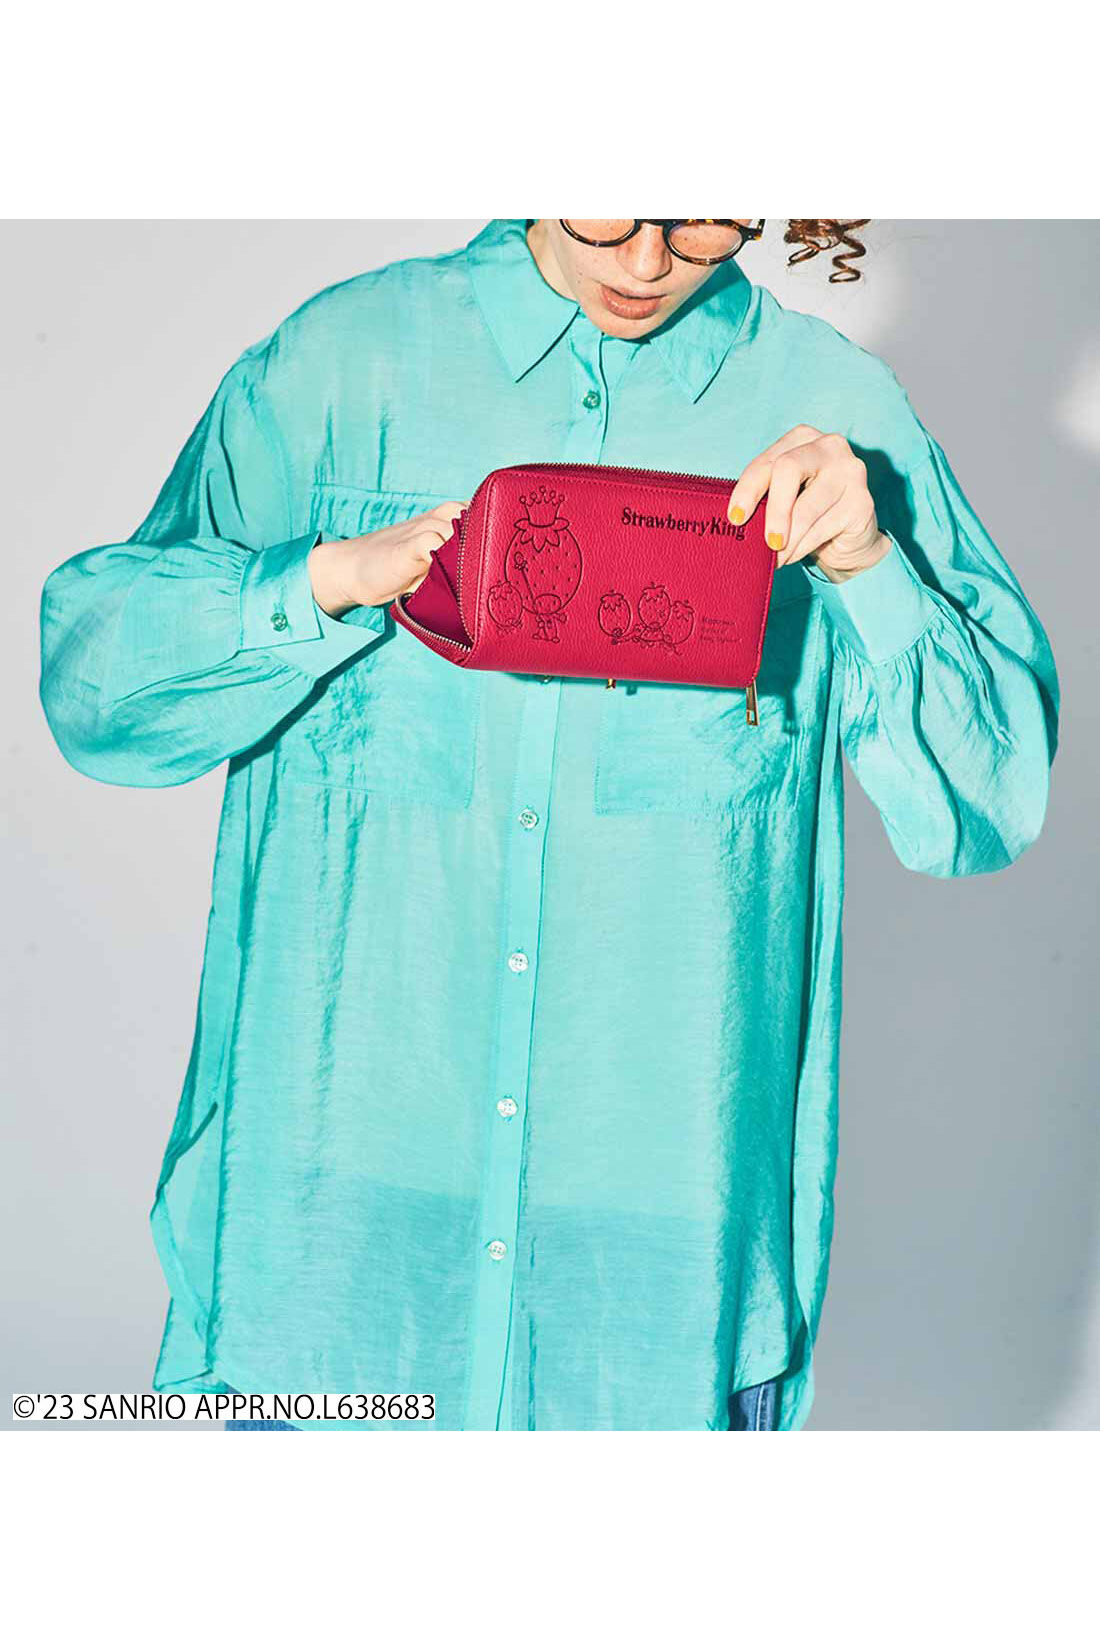 シロップ．|サンリオキャラクターコラボ レトロかわいい型押しの長財布〈いちごの王さま〉